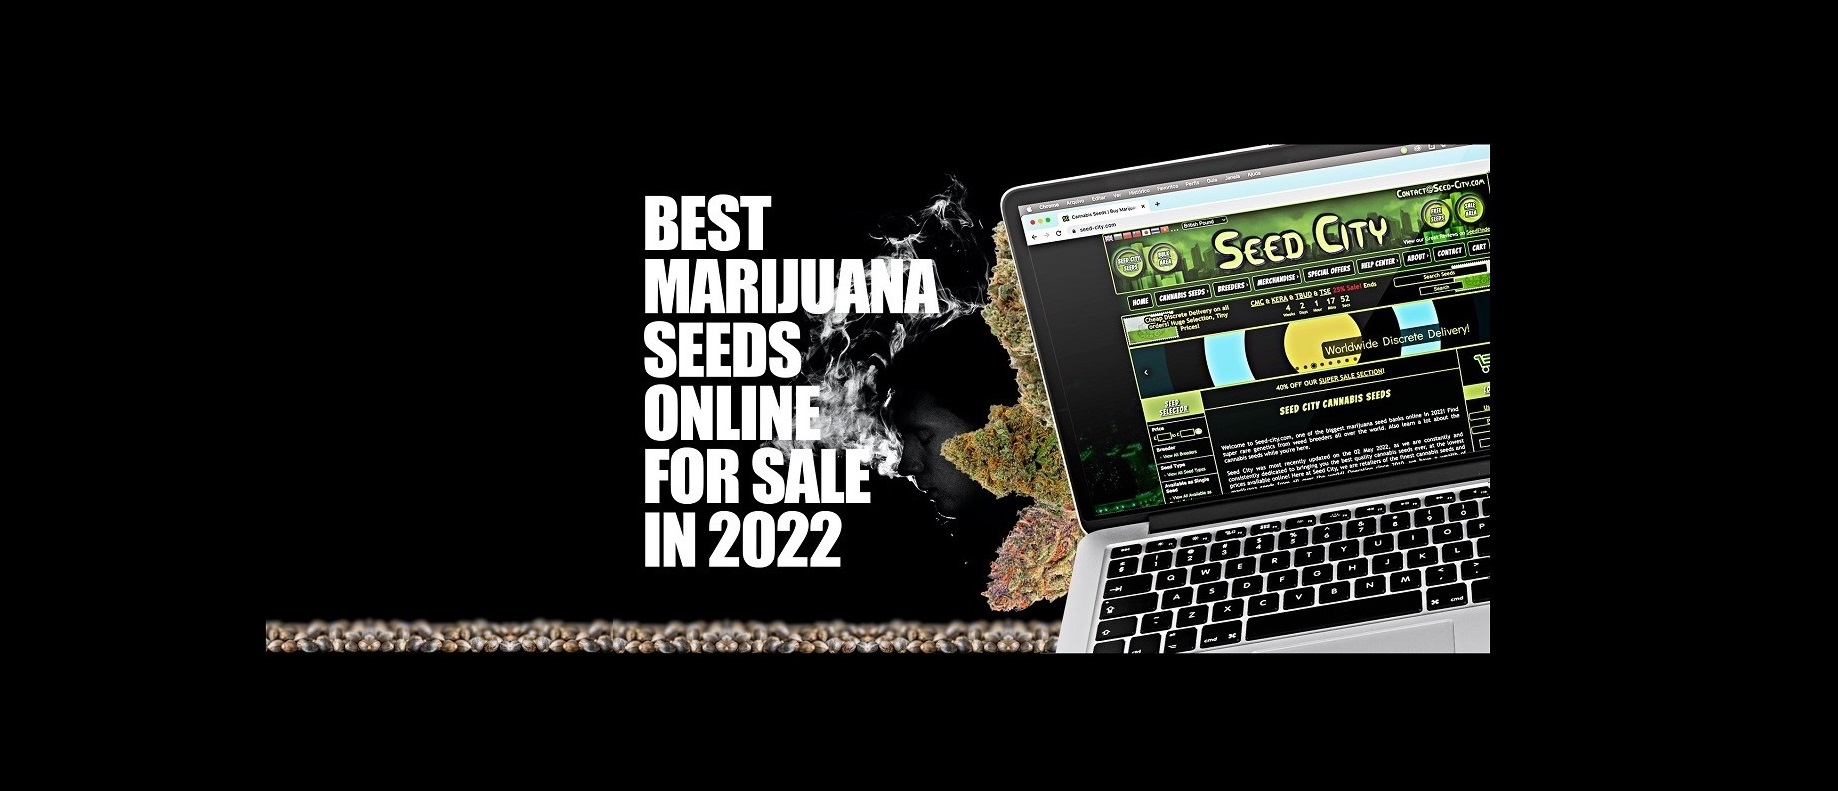 Best Marijuana Seeds Online For Sale in 2022